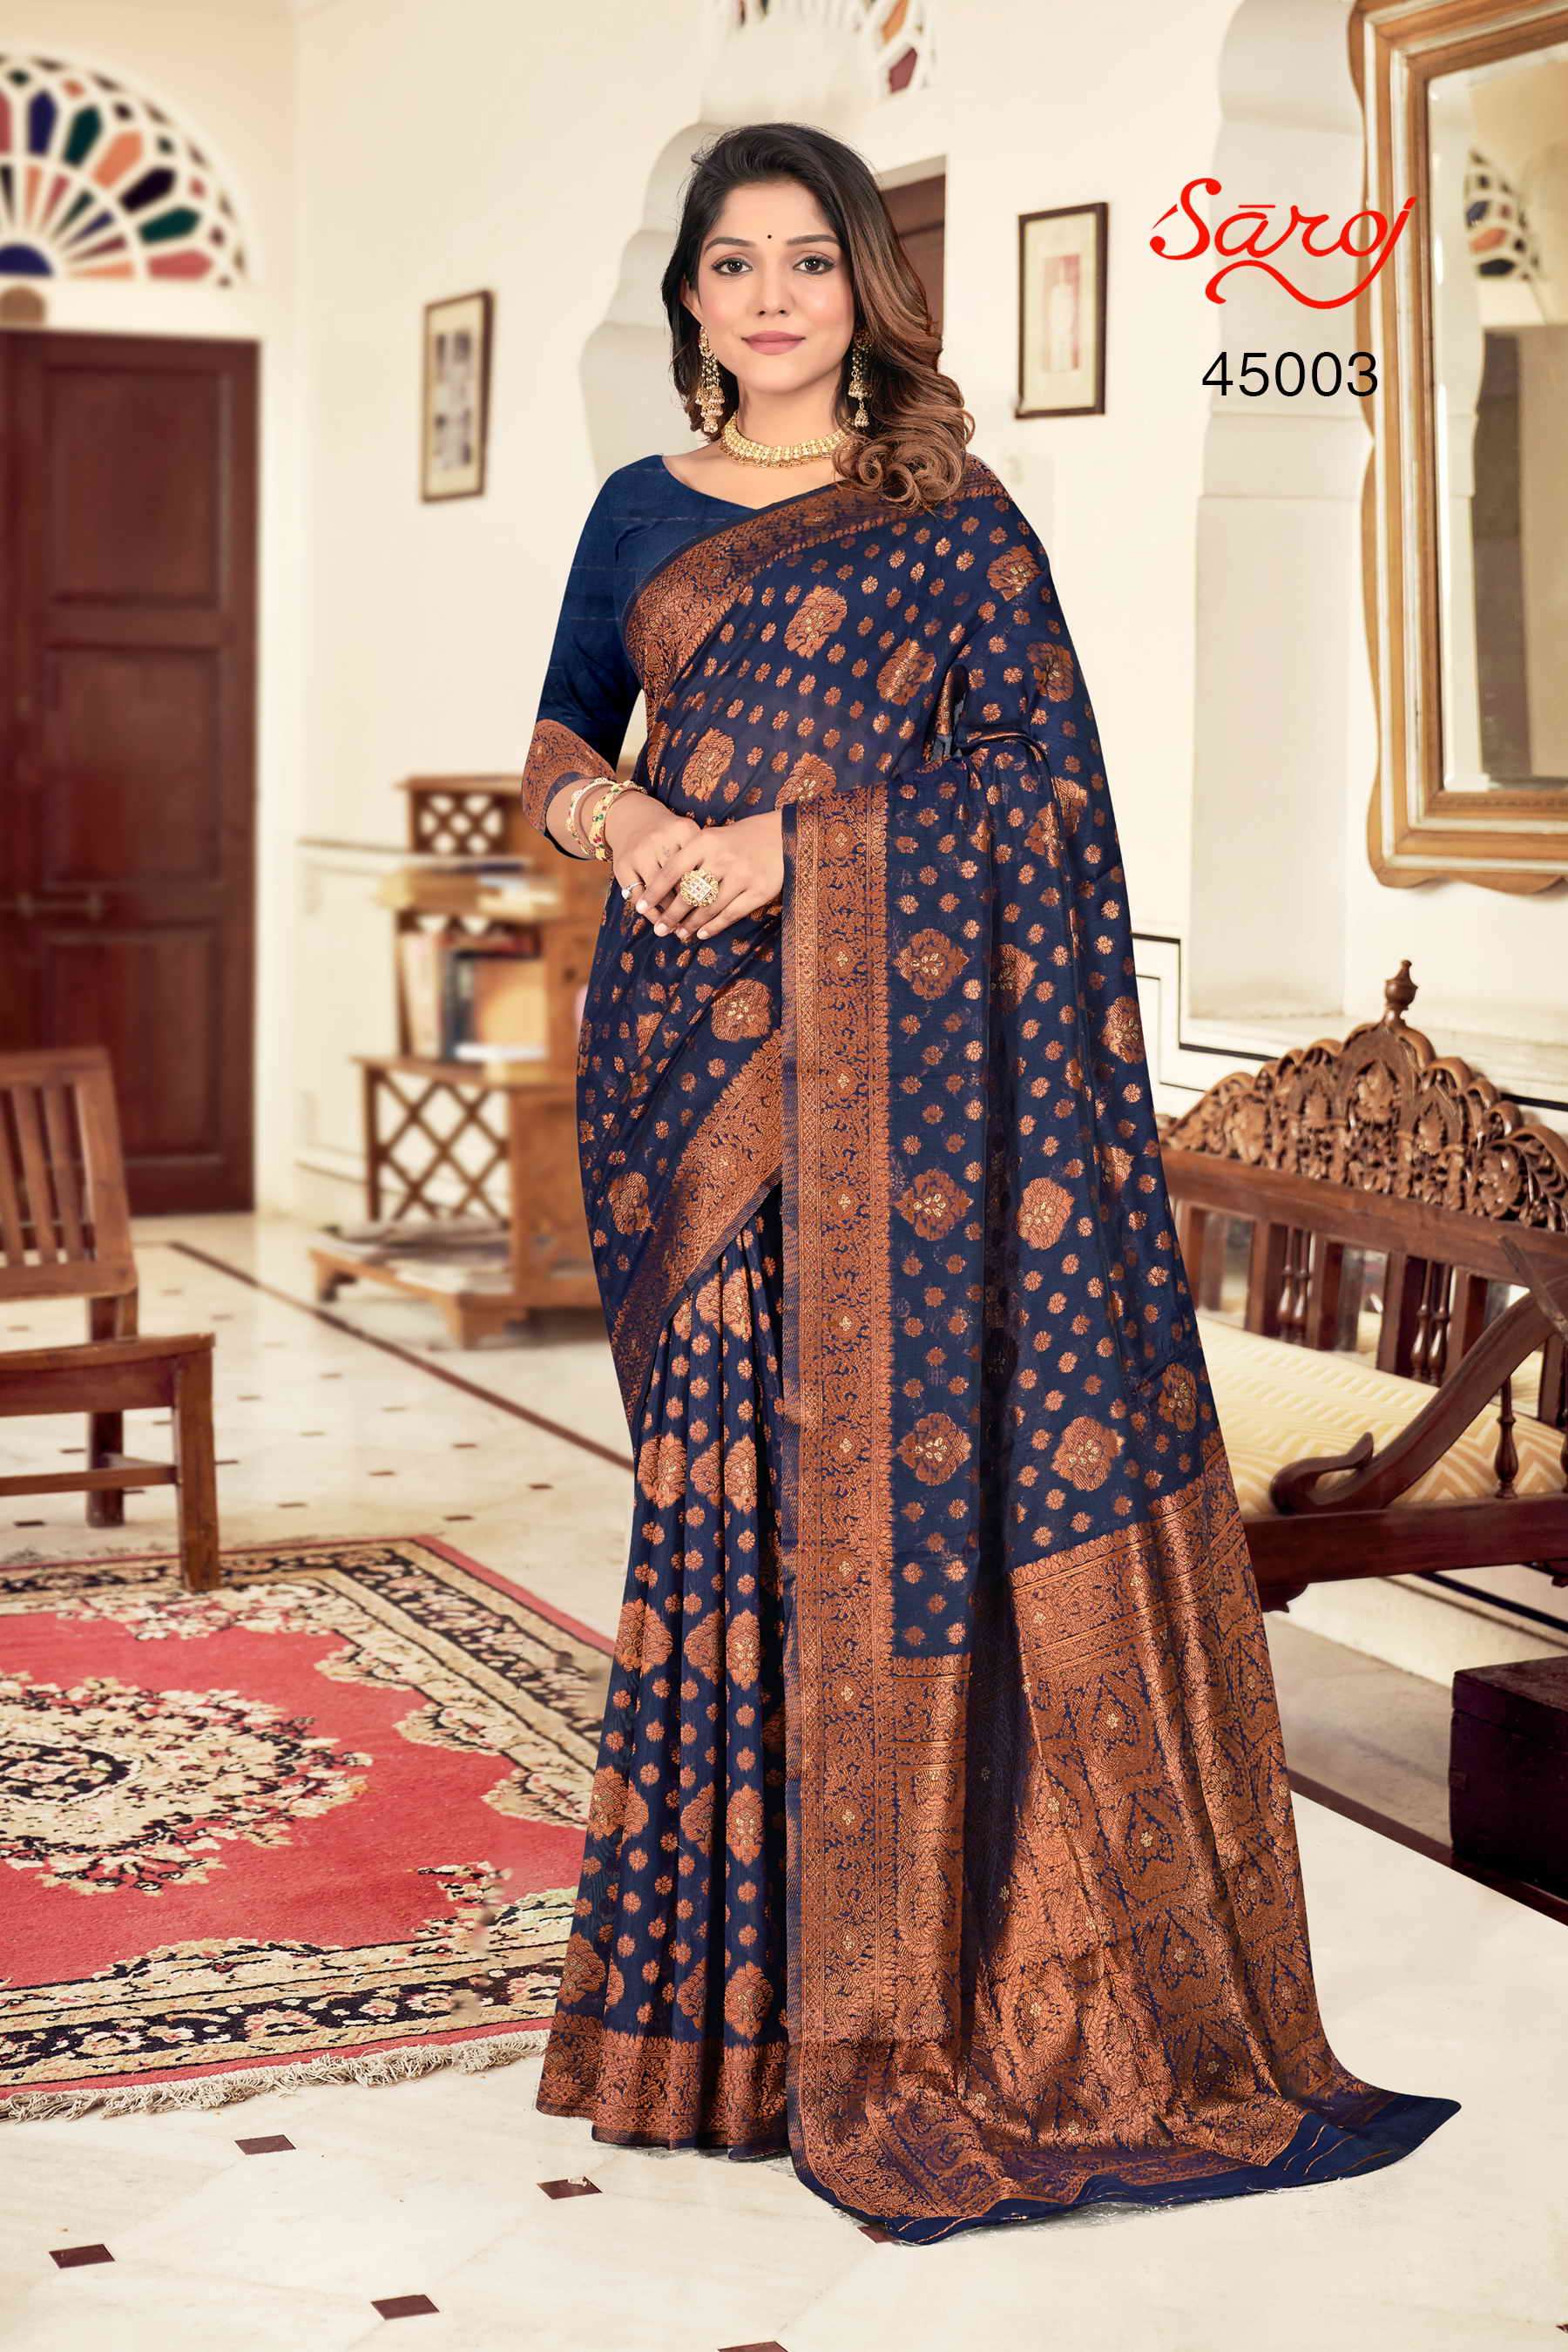 Saroj textile presents Swaroopa vol 4 Designer sarees catalogue